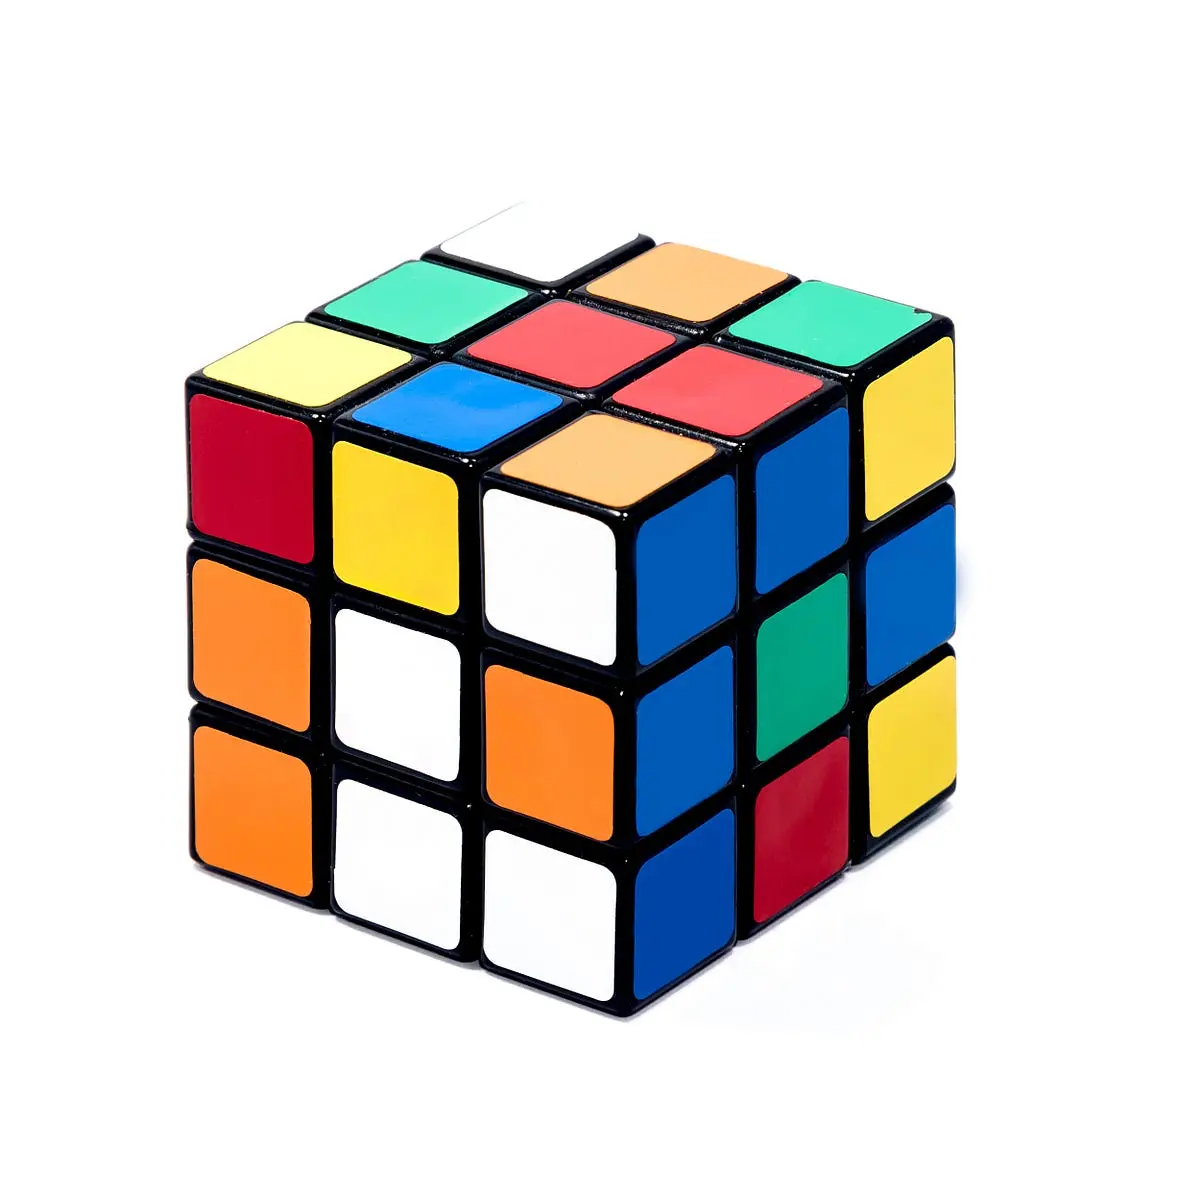 cubo para jugar - Cómo se llama el juego que es un cubo